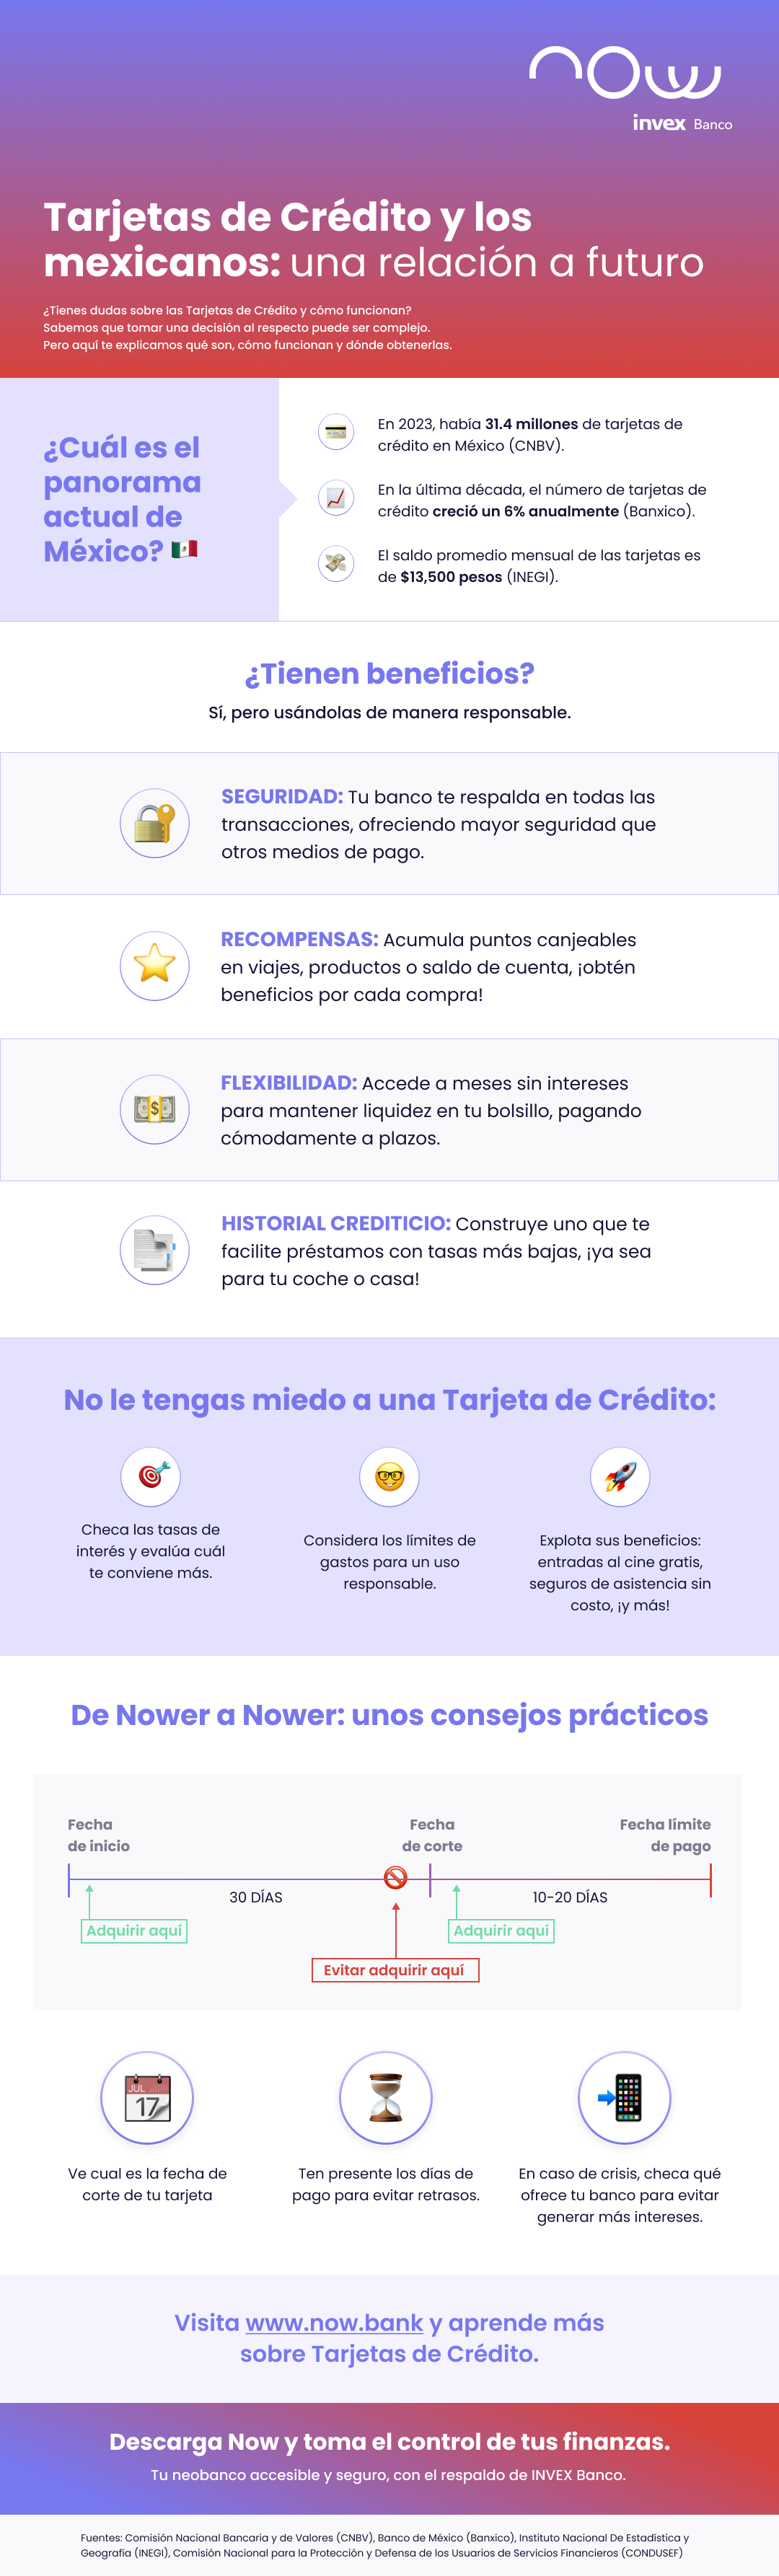 Tarjetas de Crédito y los mexicanos: una relación a futuro. ¿Tienes duda sobre las tarjetas de crédito y cómo funcionan?